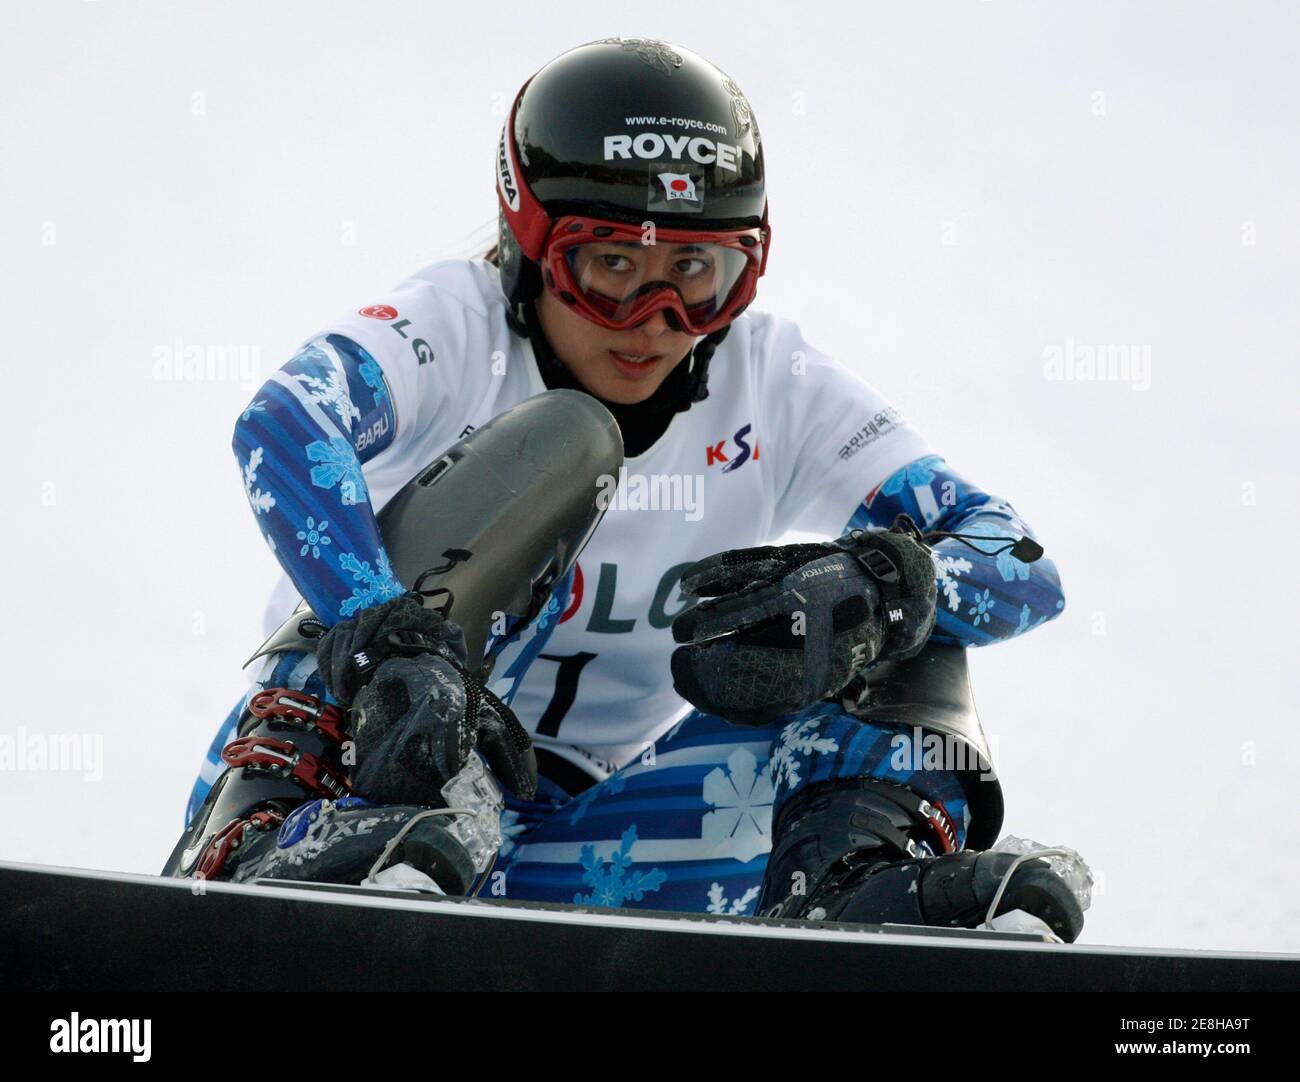 Tomoka Takeuchi du Japon réagit après sa perte à la petite finale du slalom géant parallèle de snowboard féminin aux Championnats du monde de snowboard FIS à Hoengseong, à l'est de Séoul, le 20 janvier 2009. Takeuchi a été classé quatrième. REUTERS/JO Yong-Hak (CORÉE DU SUD) Banque D'Images